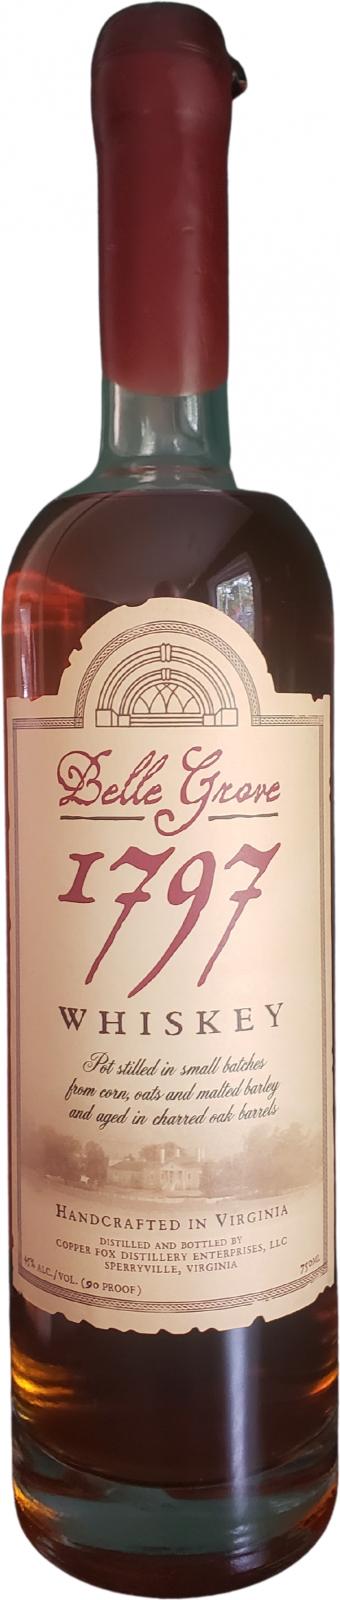 Belle Grove 1797 Whisky Charred Oak Barrels 45% 750ml